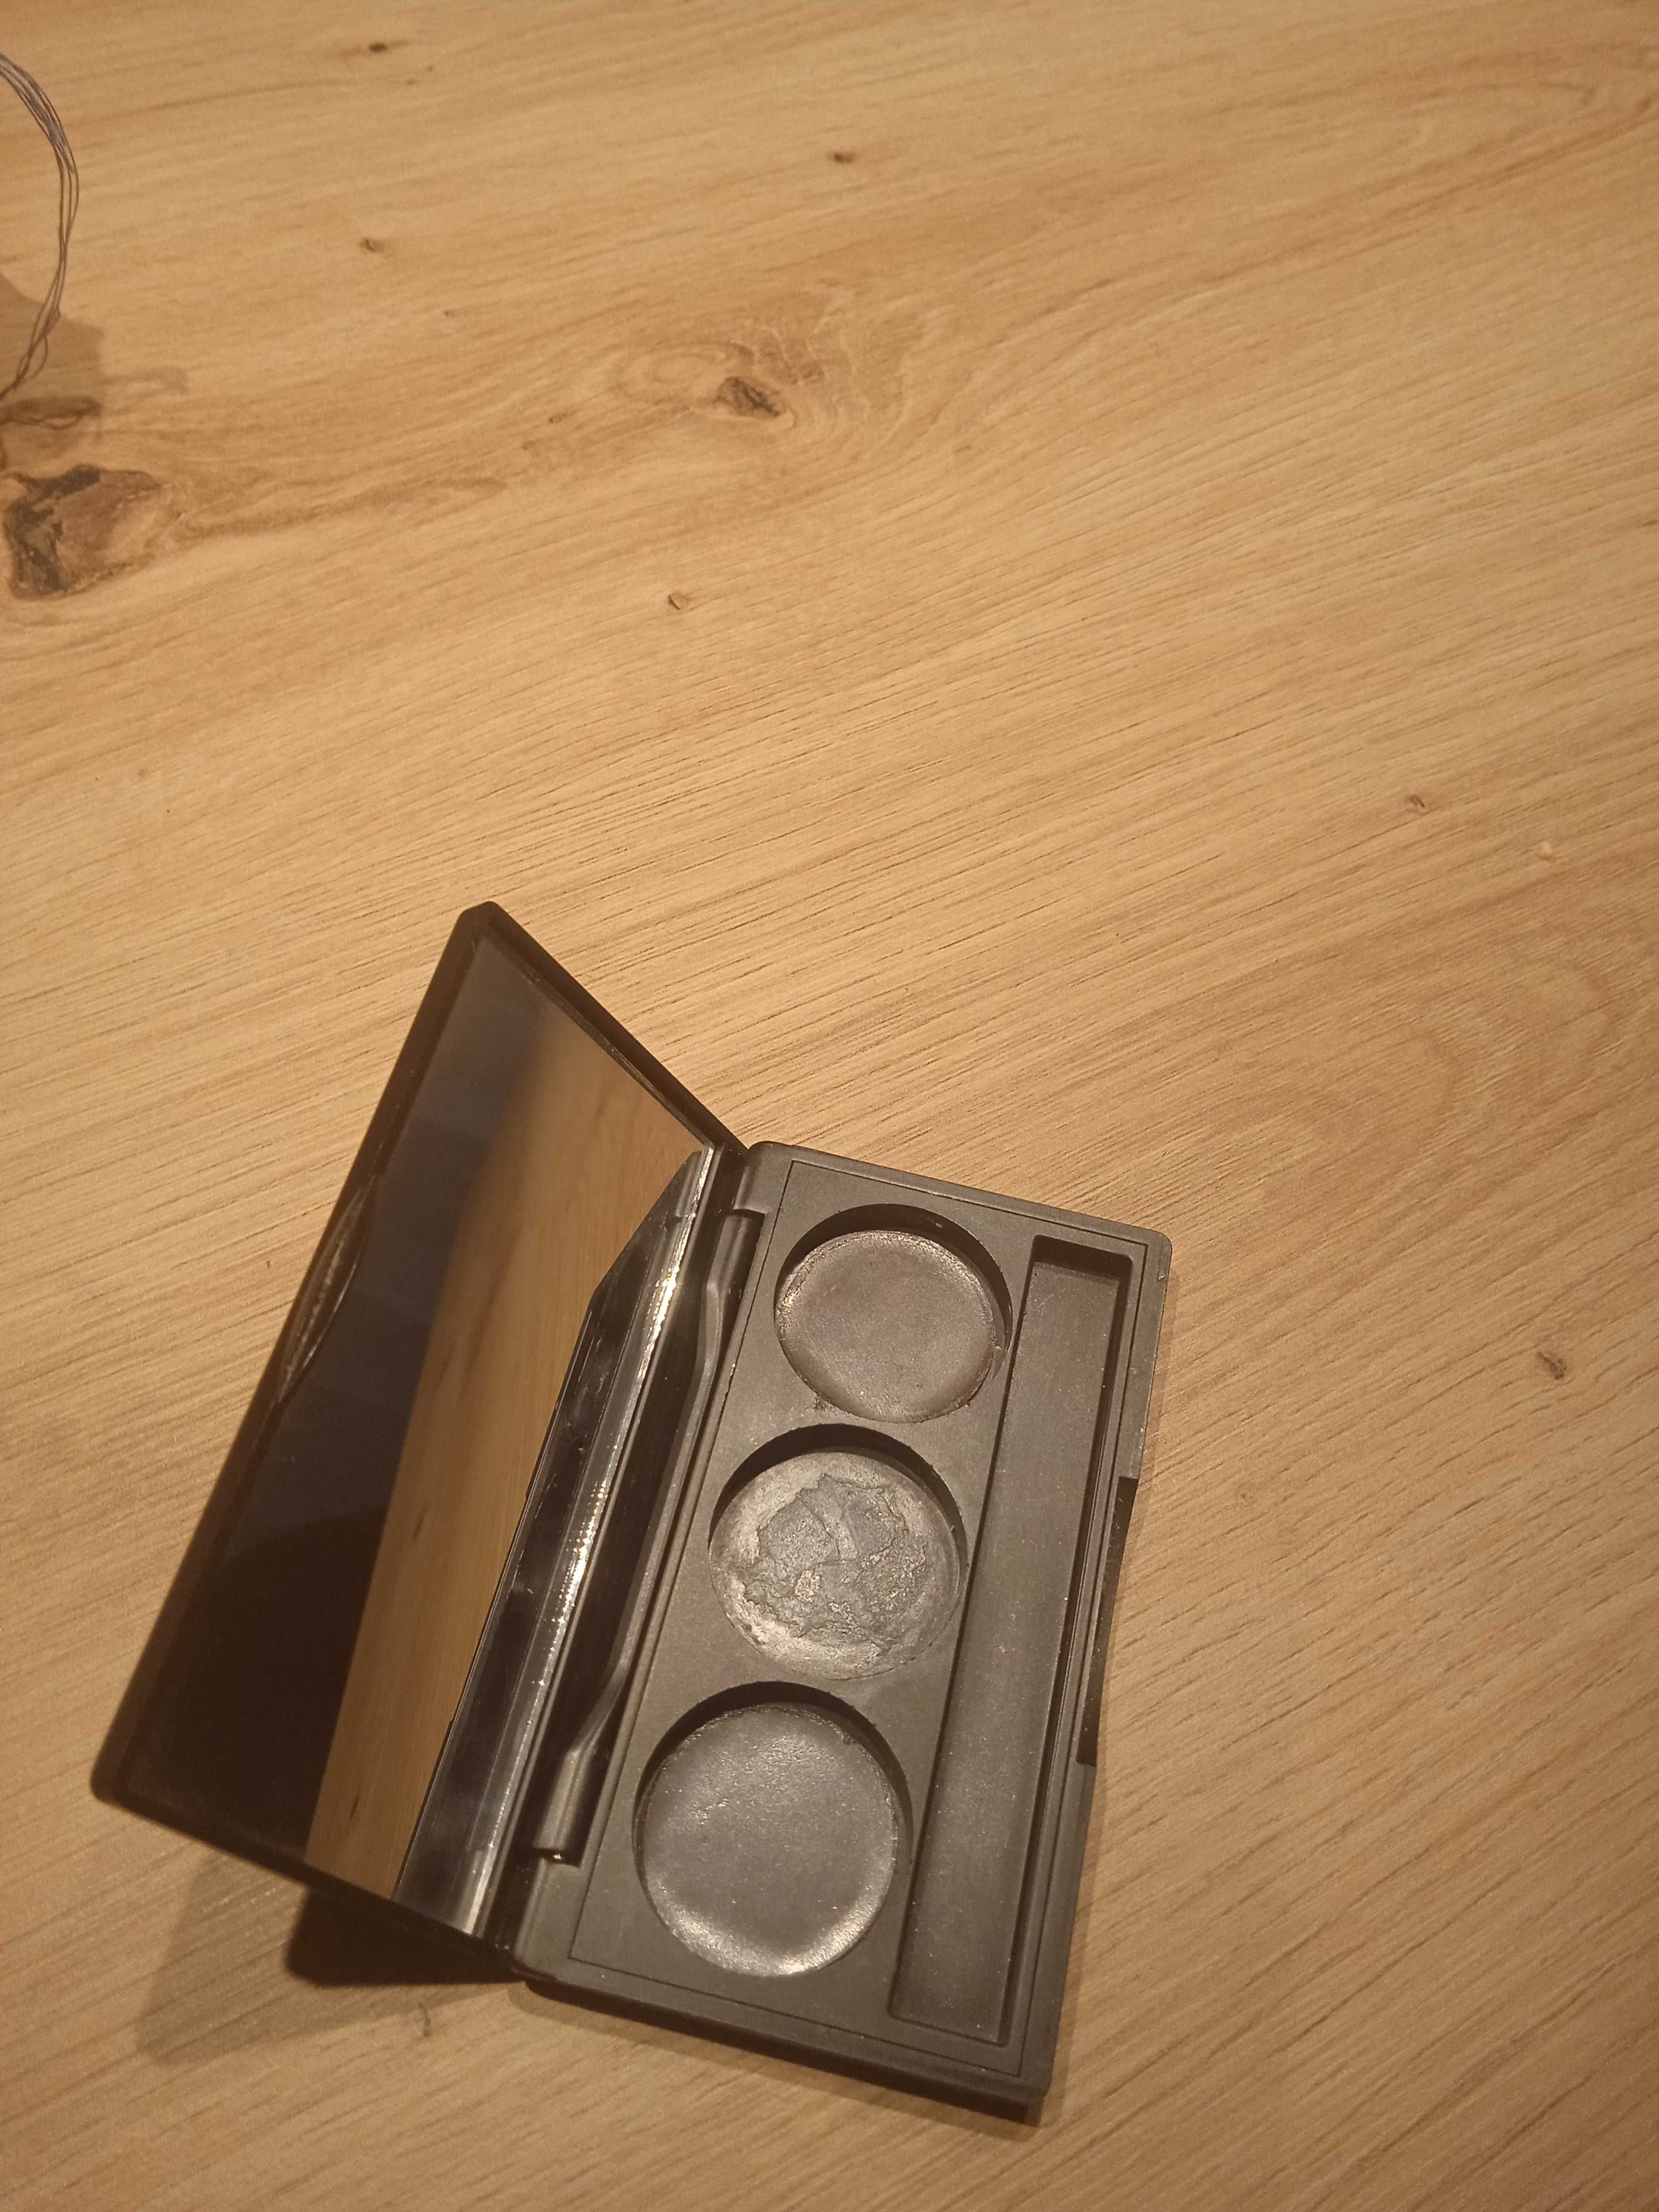 Inglot kasetka paletka na trzy okrągłe cienie Freedom System